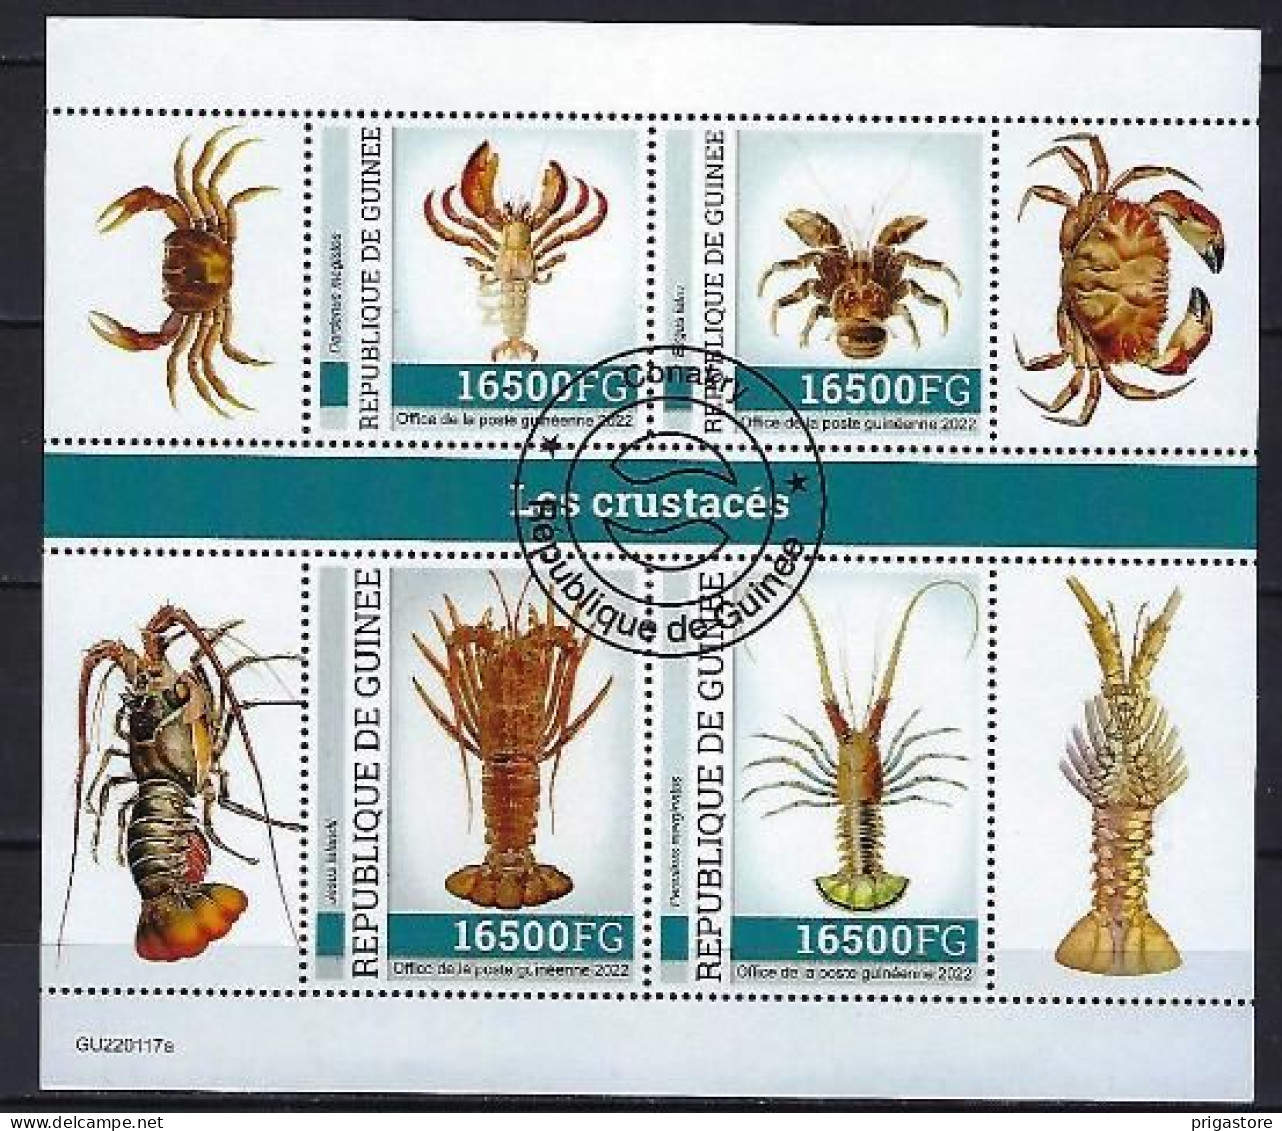 Animaux Crustacés Guinée 2022 (395) Yvert N° 11593 à 11596 Oblitérés Used - Crostacei